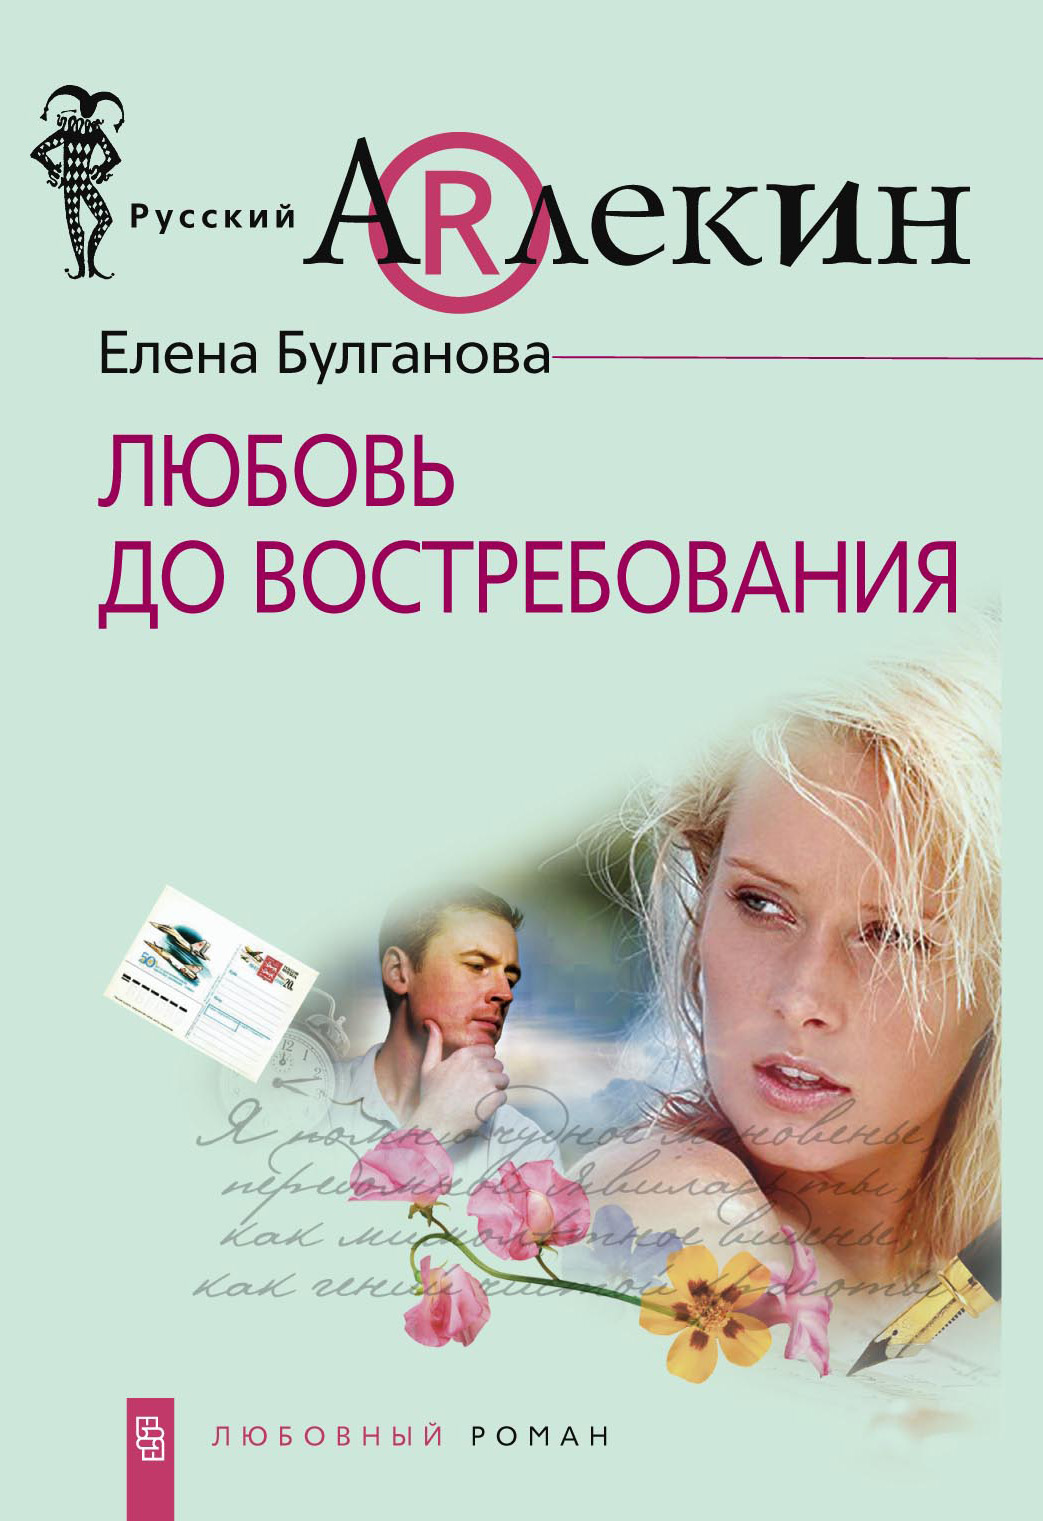 Елена Булганова - «Любовь до востребования»